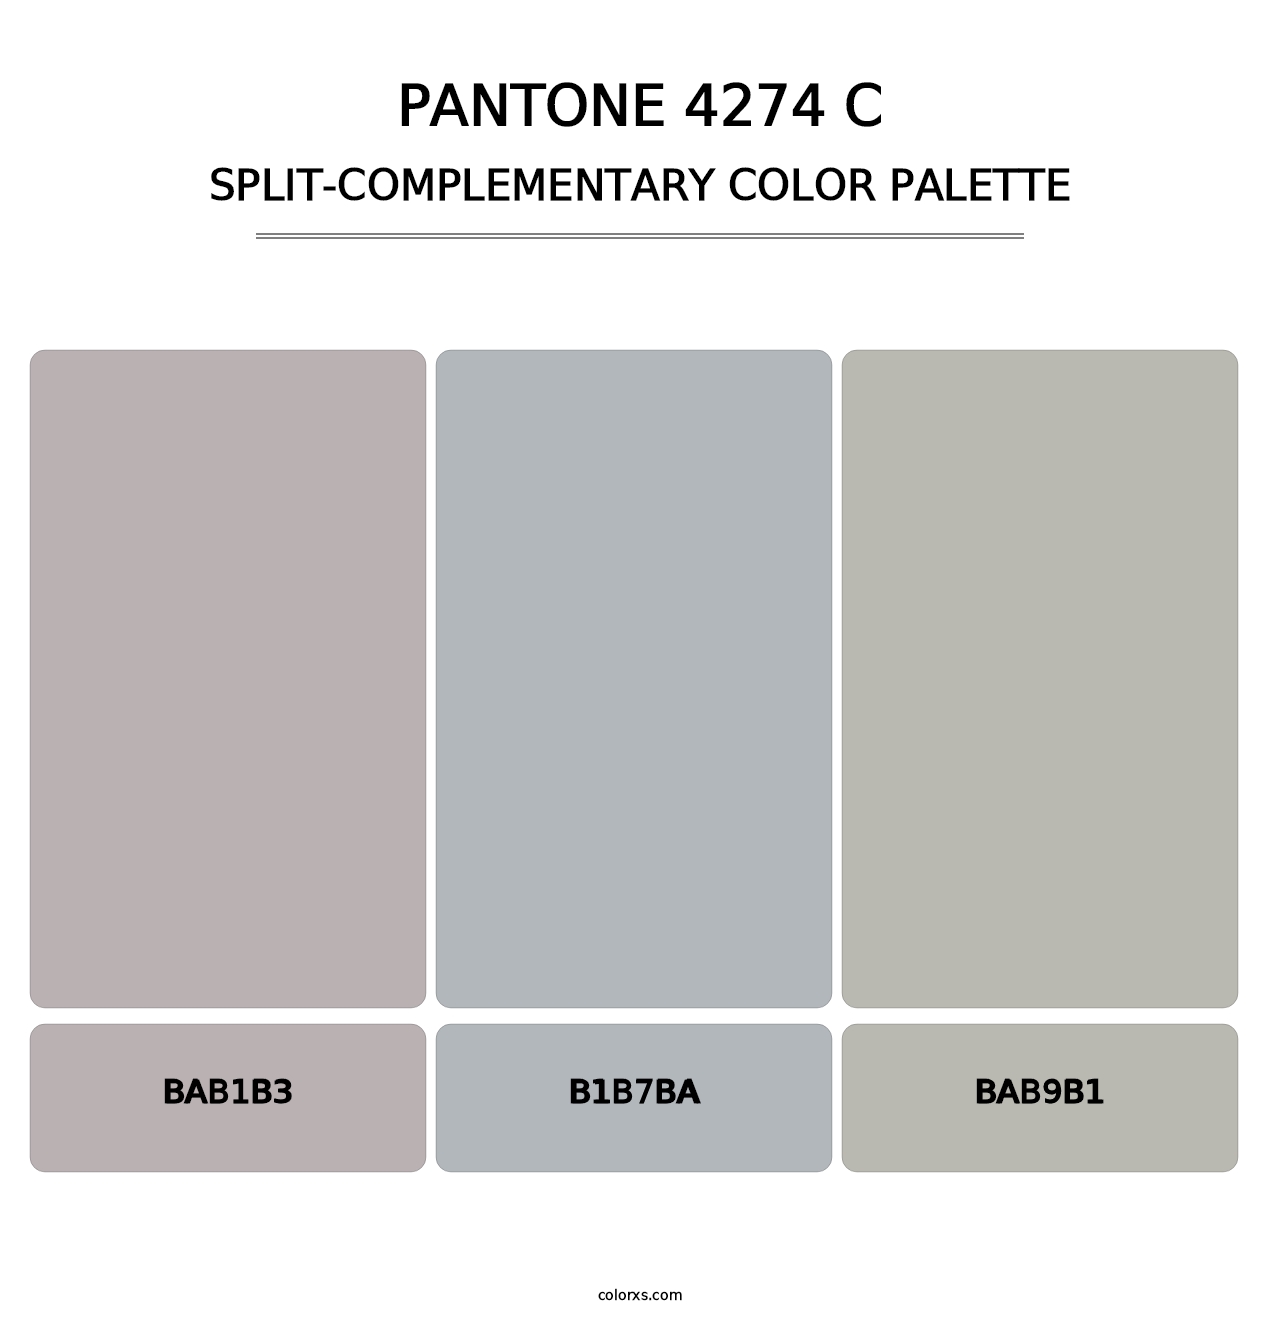 PANTONE 4274 C - Split-Complementary Color Palette